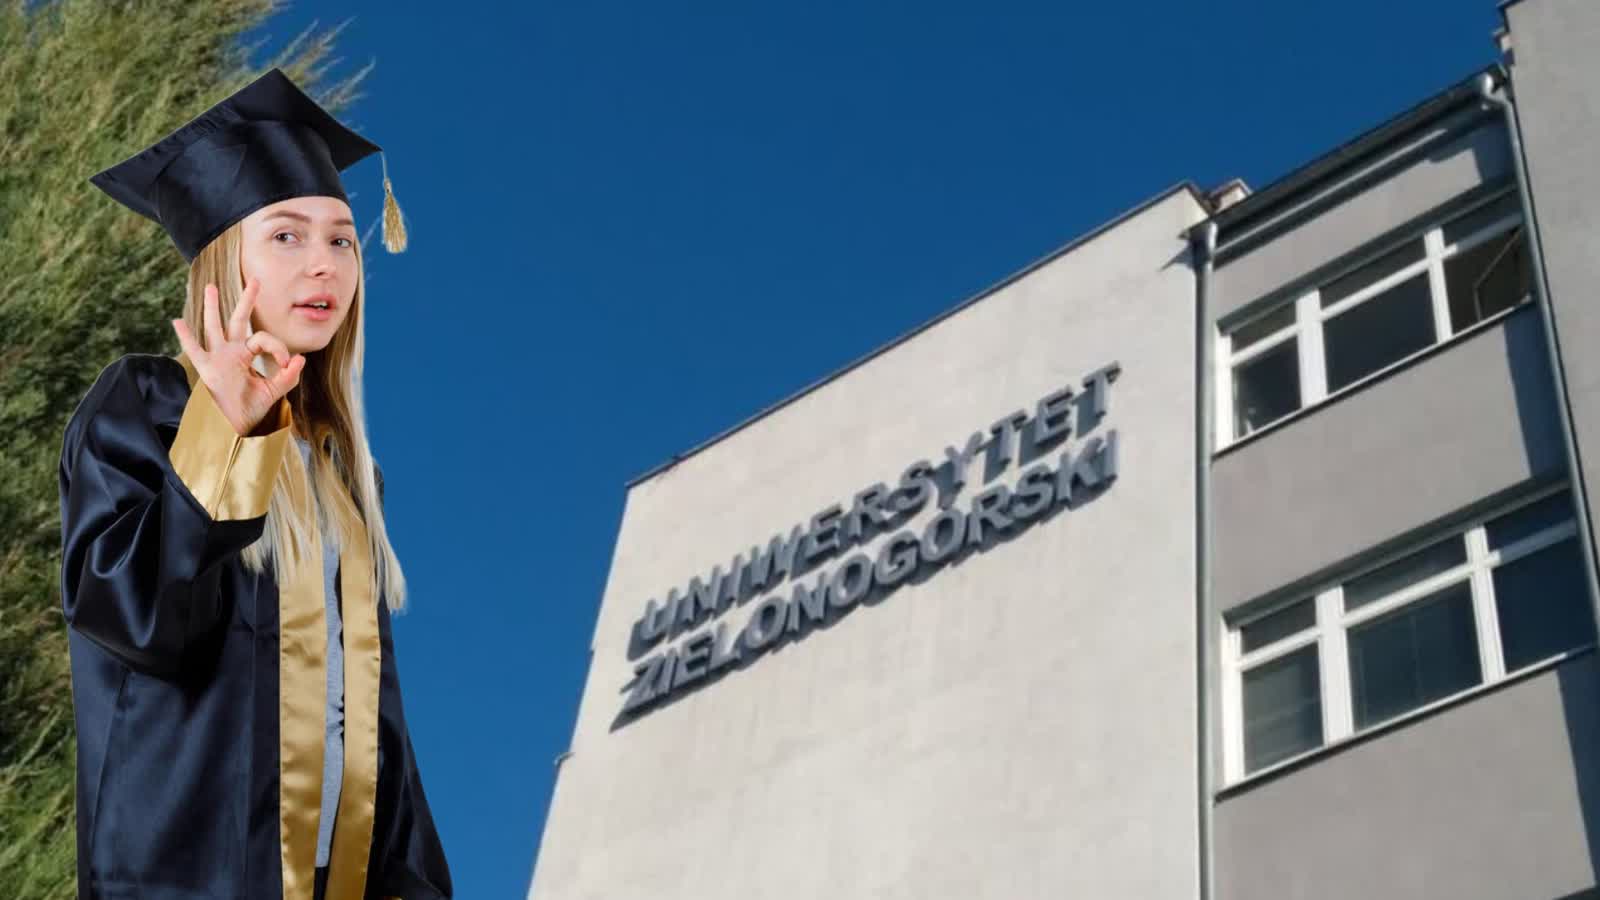 Uniwersytet Zielonogórski trzecią uczelnią w kraju wg prestiżowego międzynarodowego rankingu Radio Zachód - Lubuskie